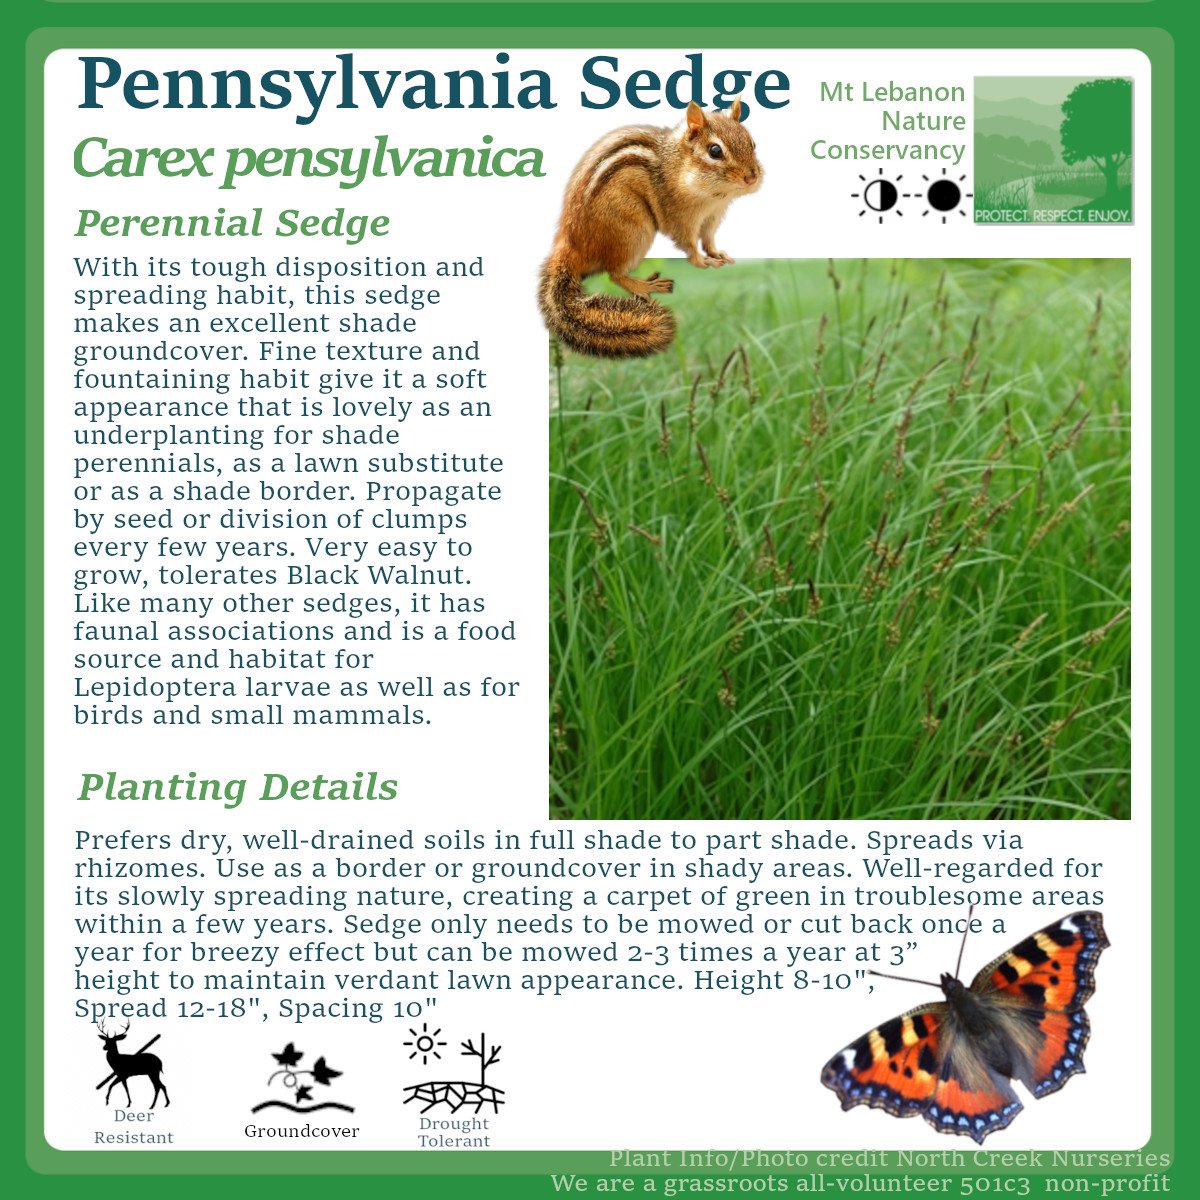 PennsylvaniaSedge_Carex pensylvanica.jpg